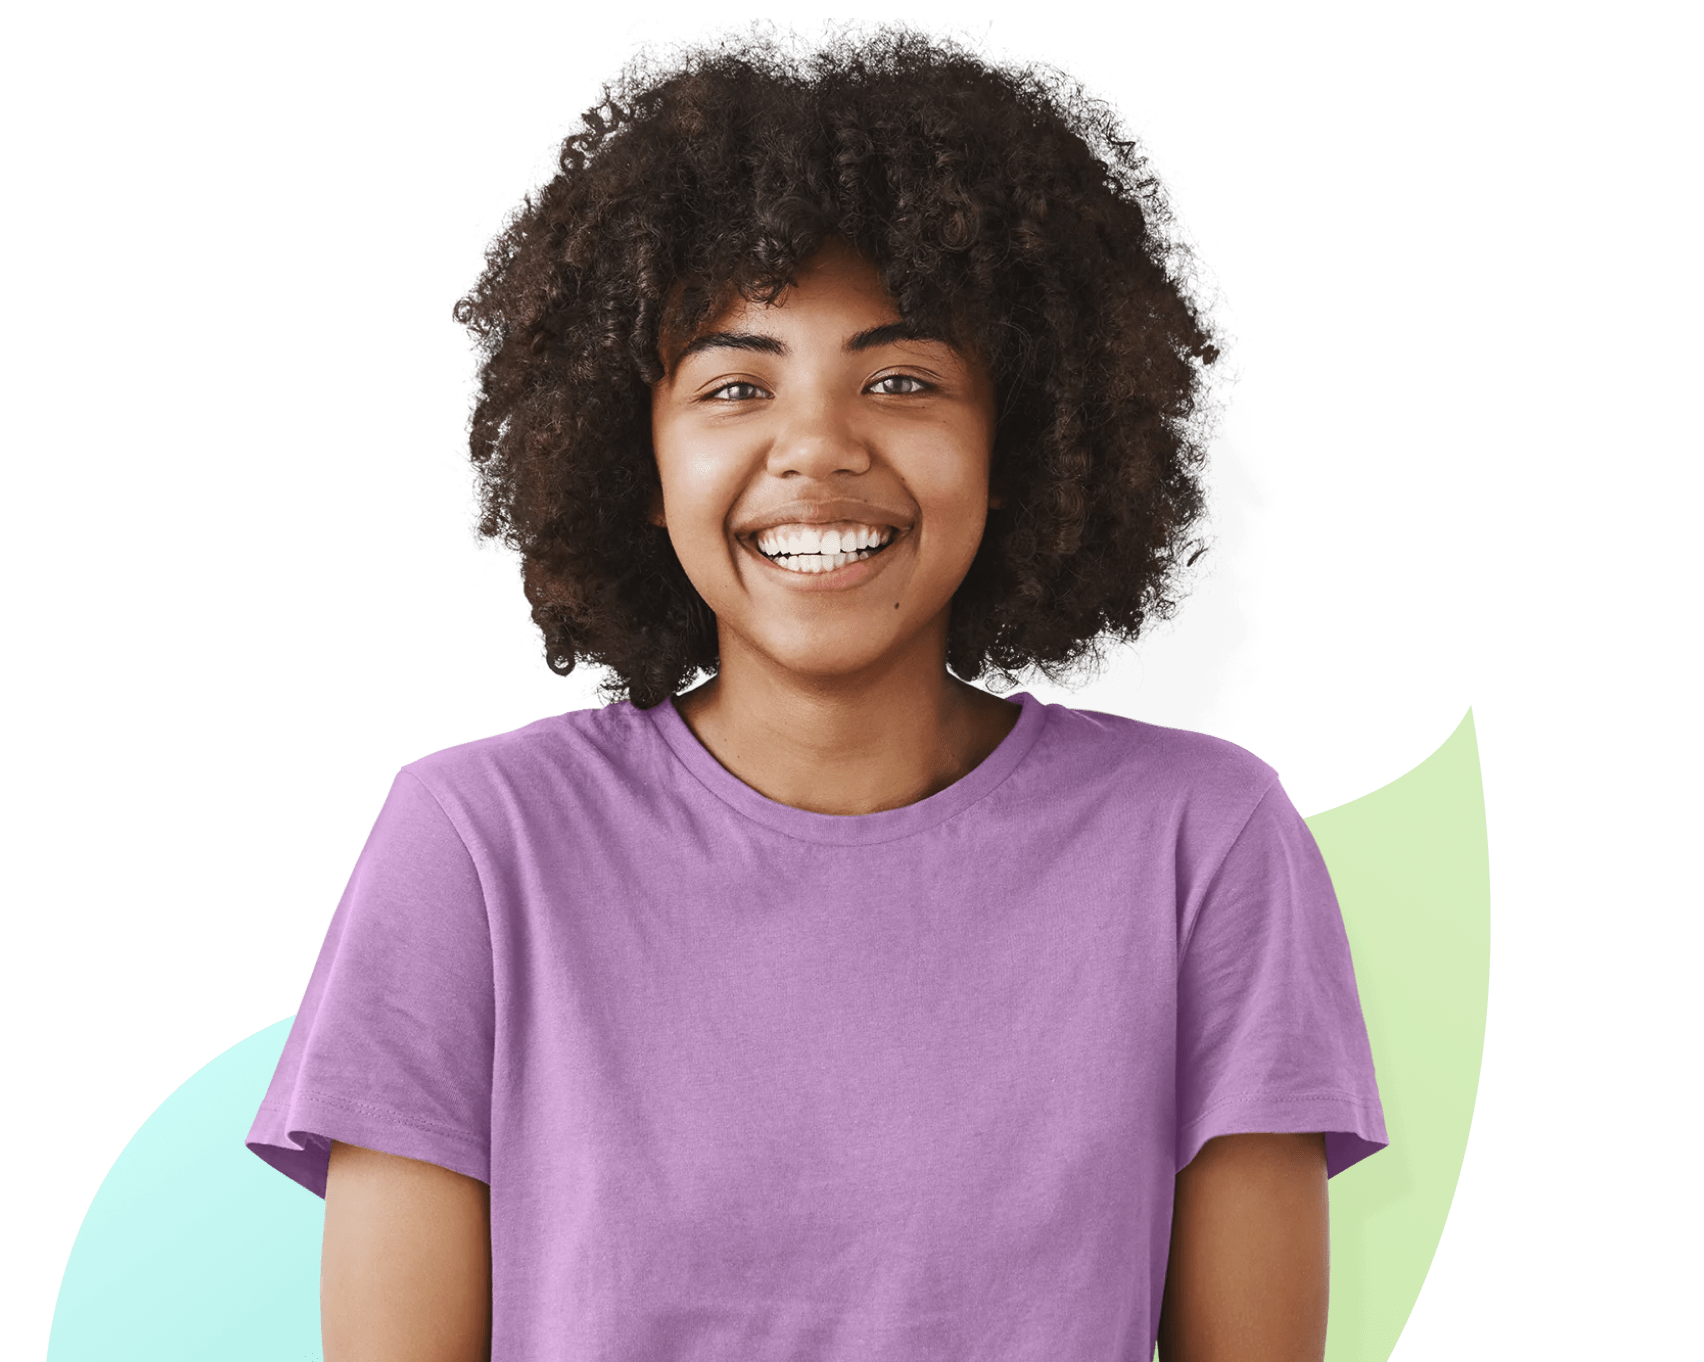 Une jeune fille souriante vêtue d’un t-shirt violet regarde droit devant elle.